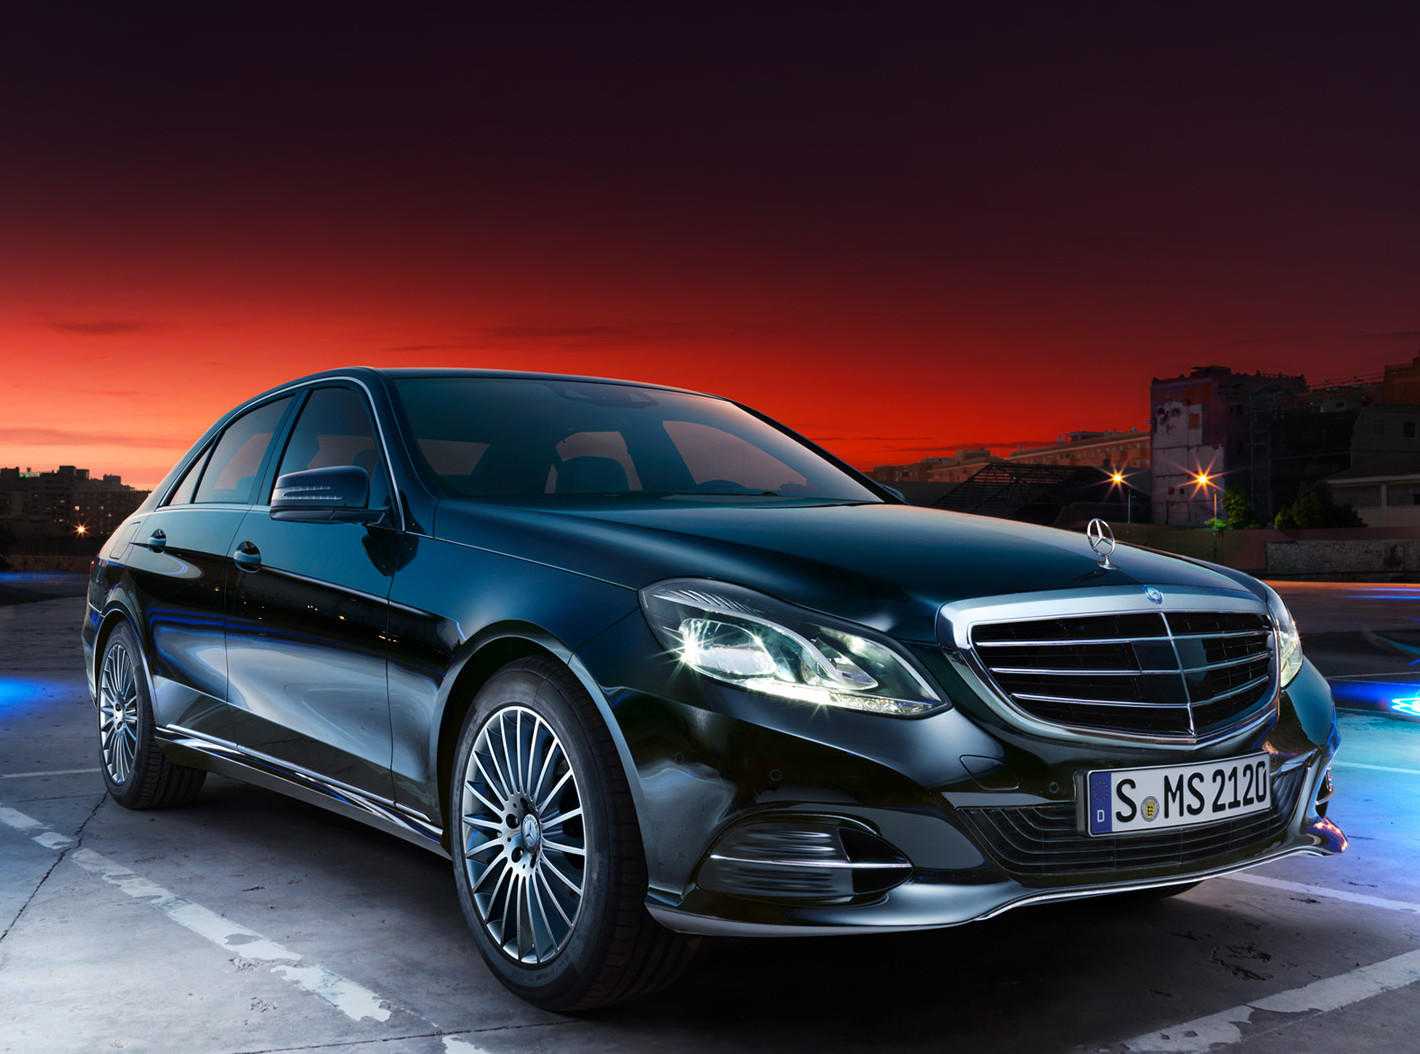 Mercedes-benz e-klasse: поколения, кузова по годам, история модели и года выпуска, рестайлинг, характеристики, габариты, фото - carsweek